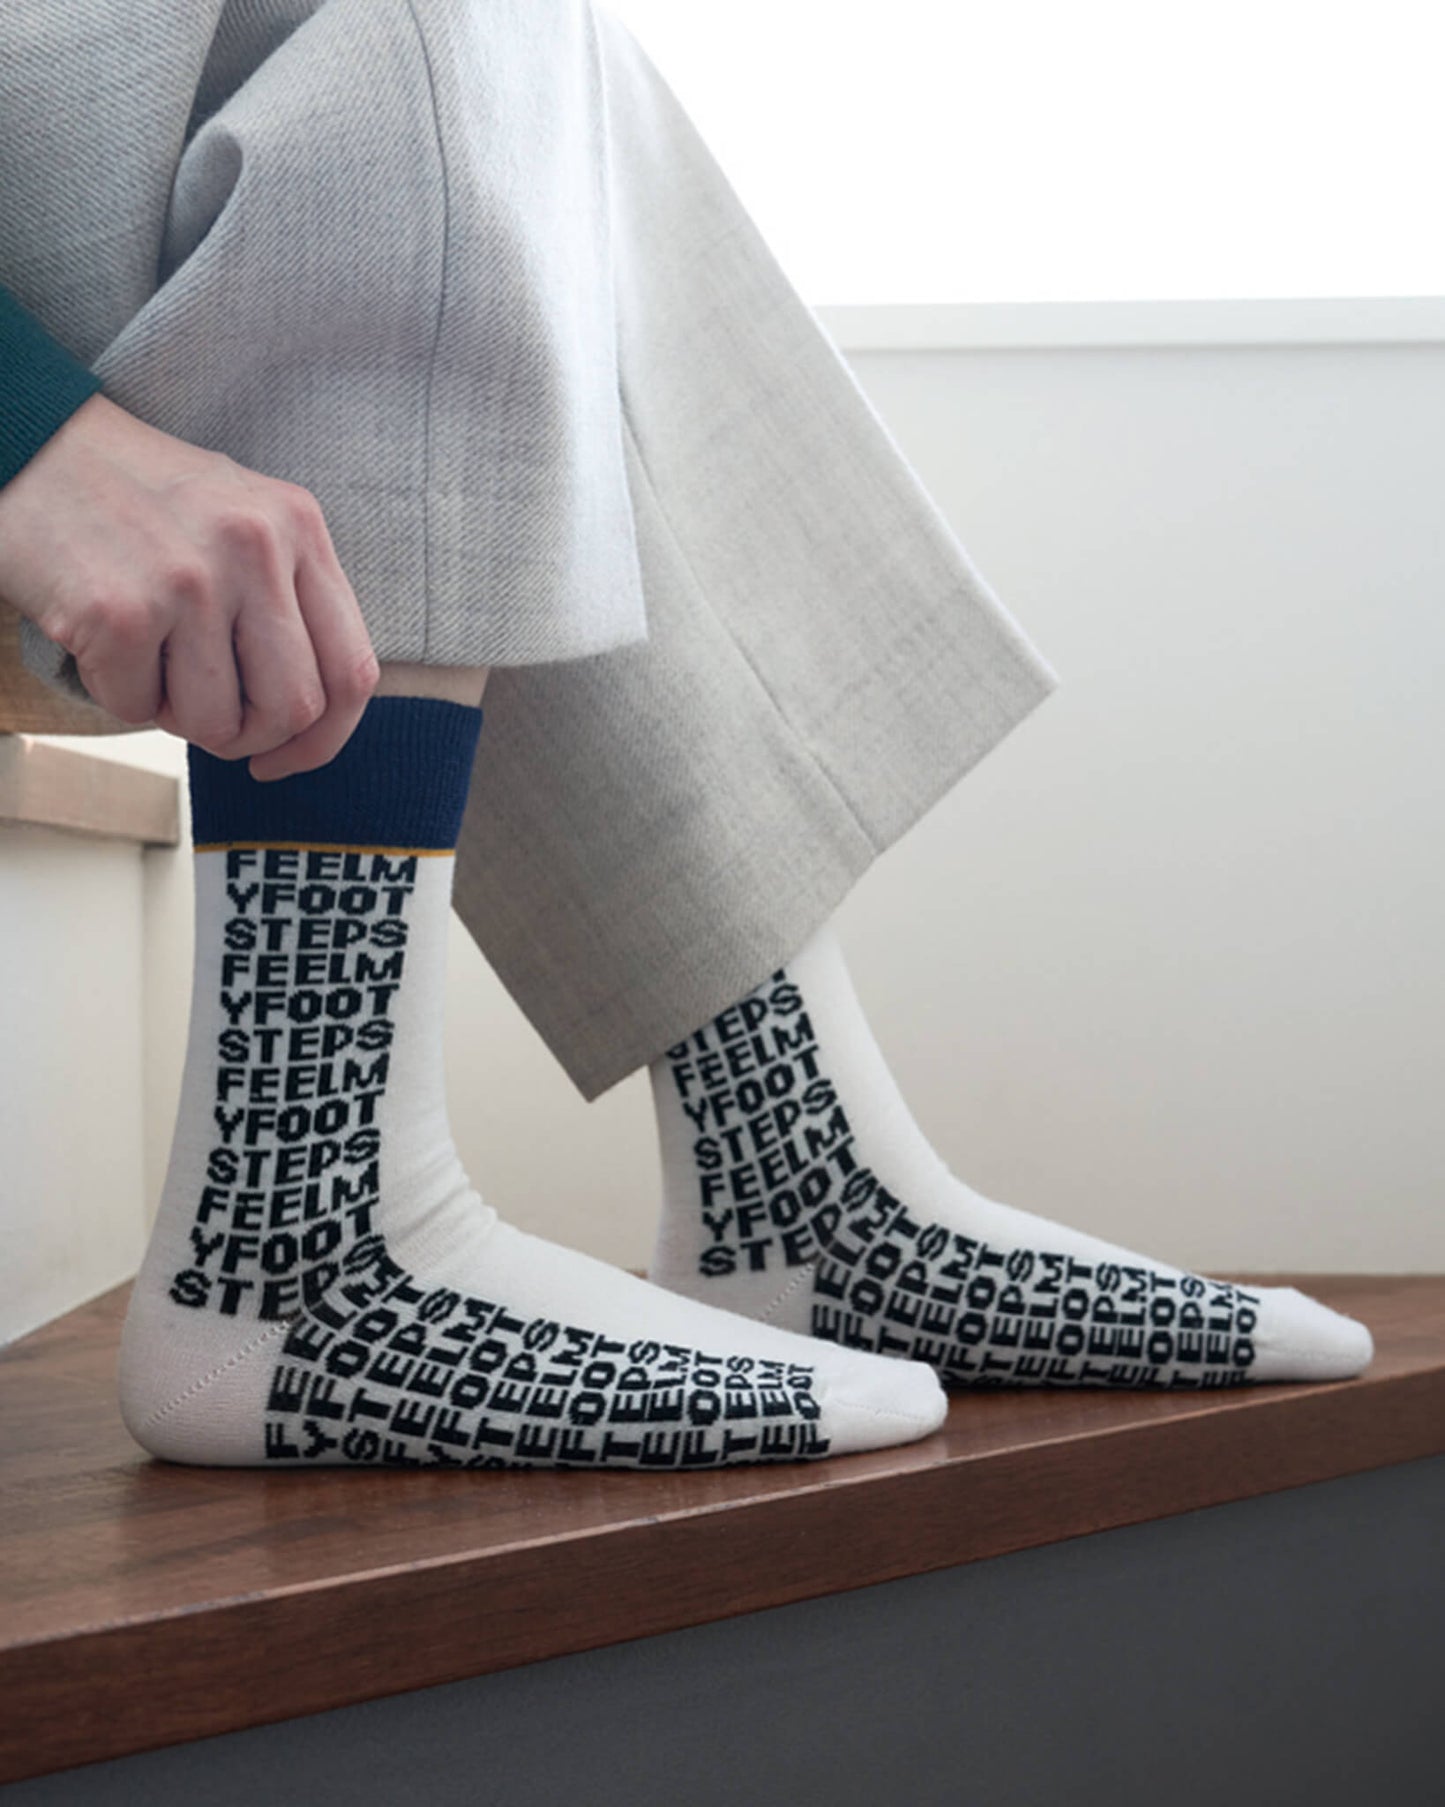 LETTER-pattern socks